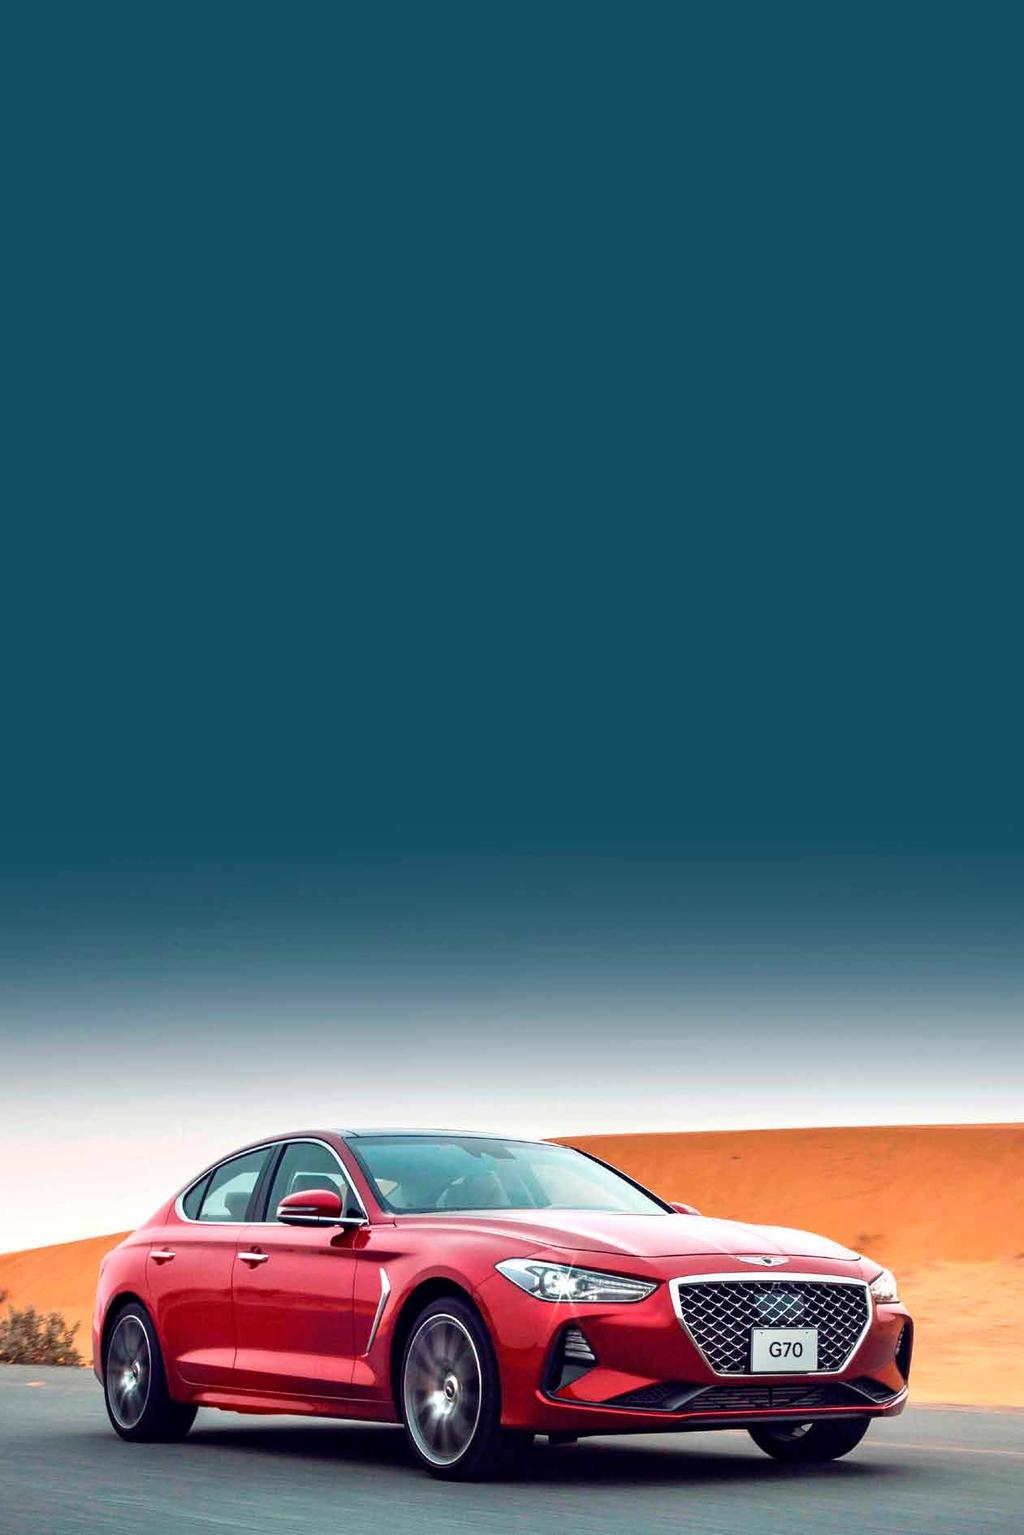 11 سكايالين الوكيل الرسمي للعالمة في السوق القطري )جينيسيس( تطلق الطراز G70 في أسواق الشرق األوسط أعلنت جينيسيس أنها أطلقت رسميا سيارتها اجلديدة G70 في منطقة الشرق األوسط.